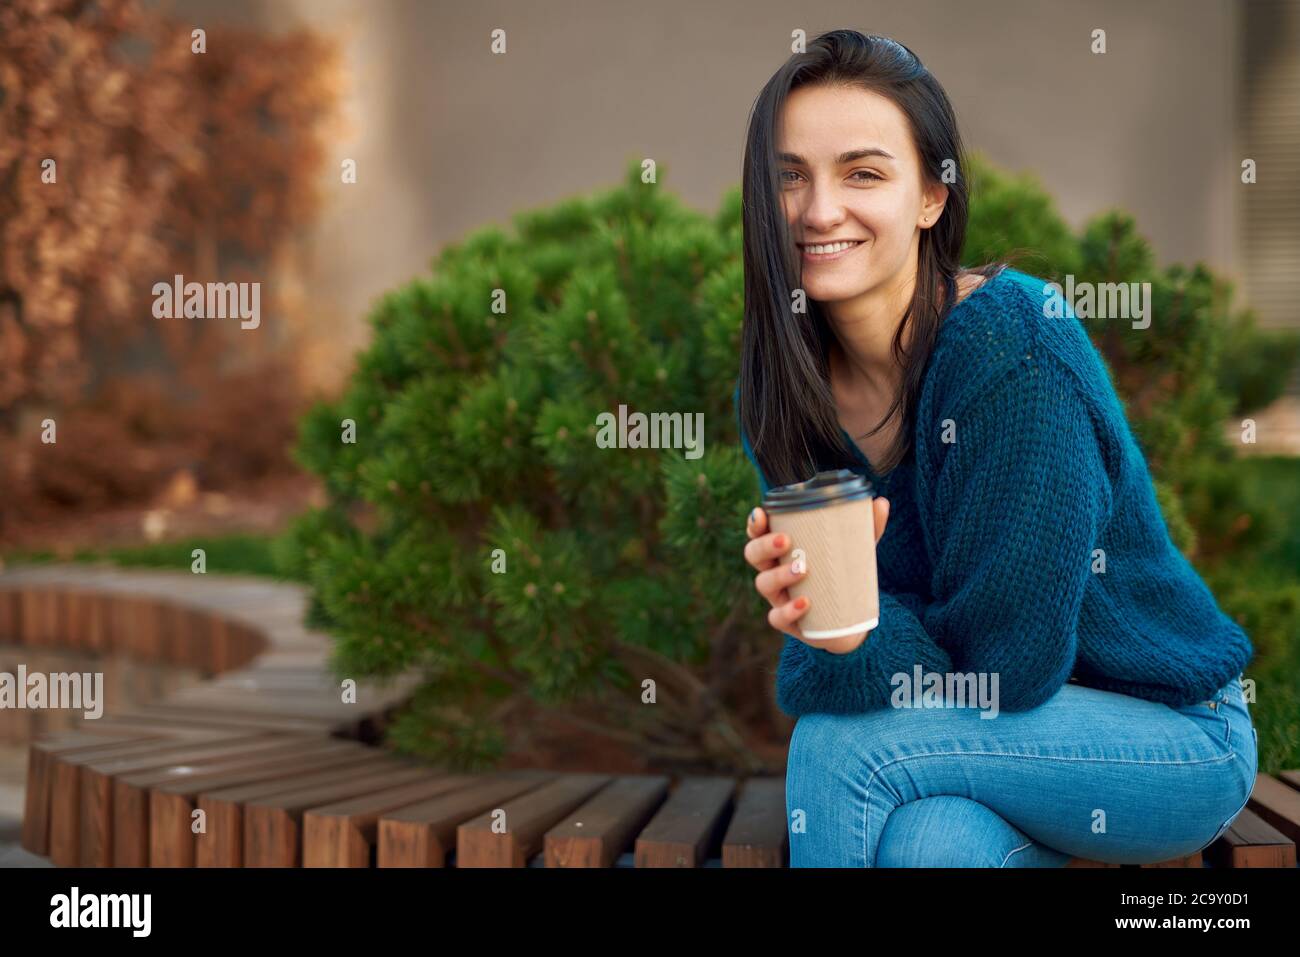 Charmantes junges Model posiert auf einem Holzsitz in einem Park, lehnt sich mit Ellbogen auf ihr Knie, lächelt und schaut in die Kamera Stockfoto